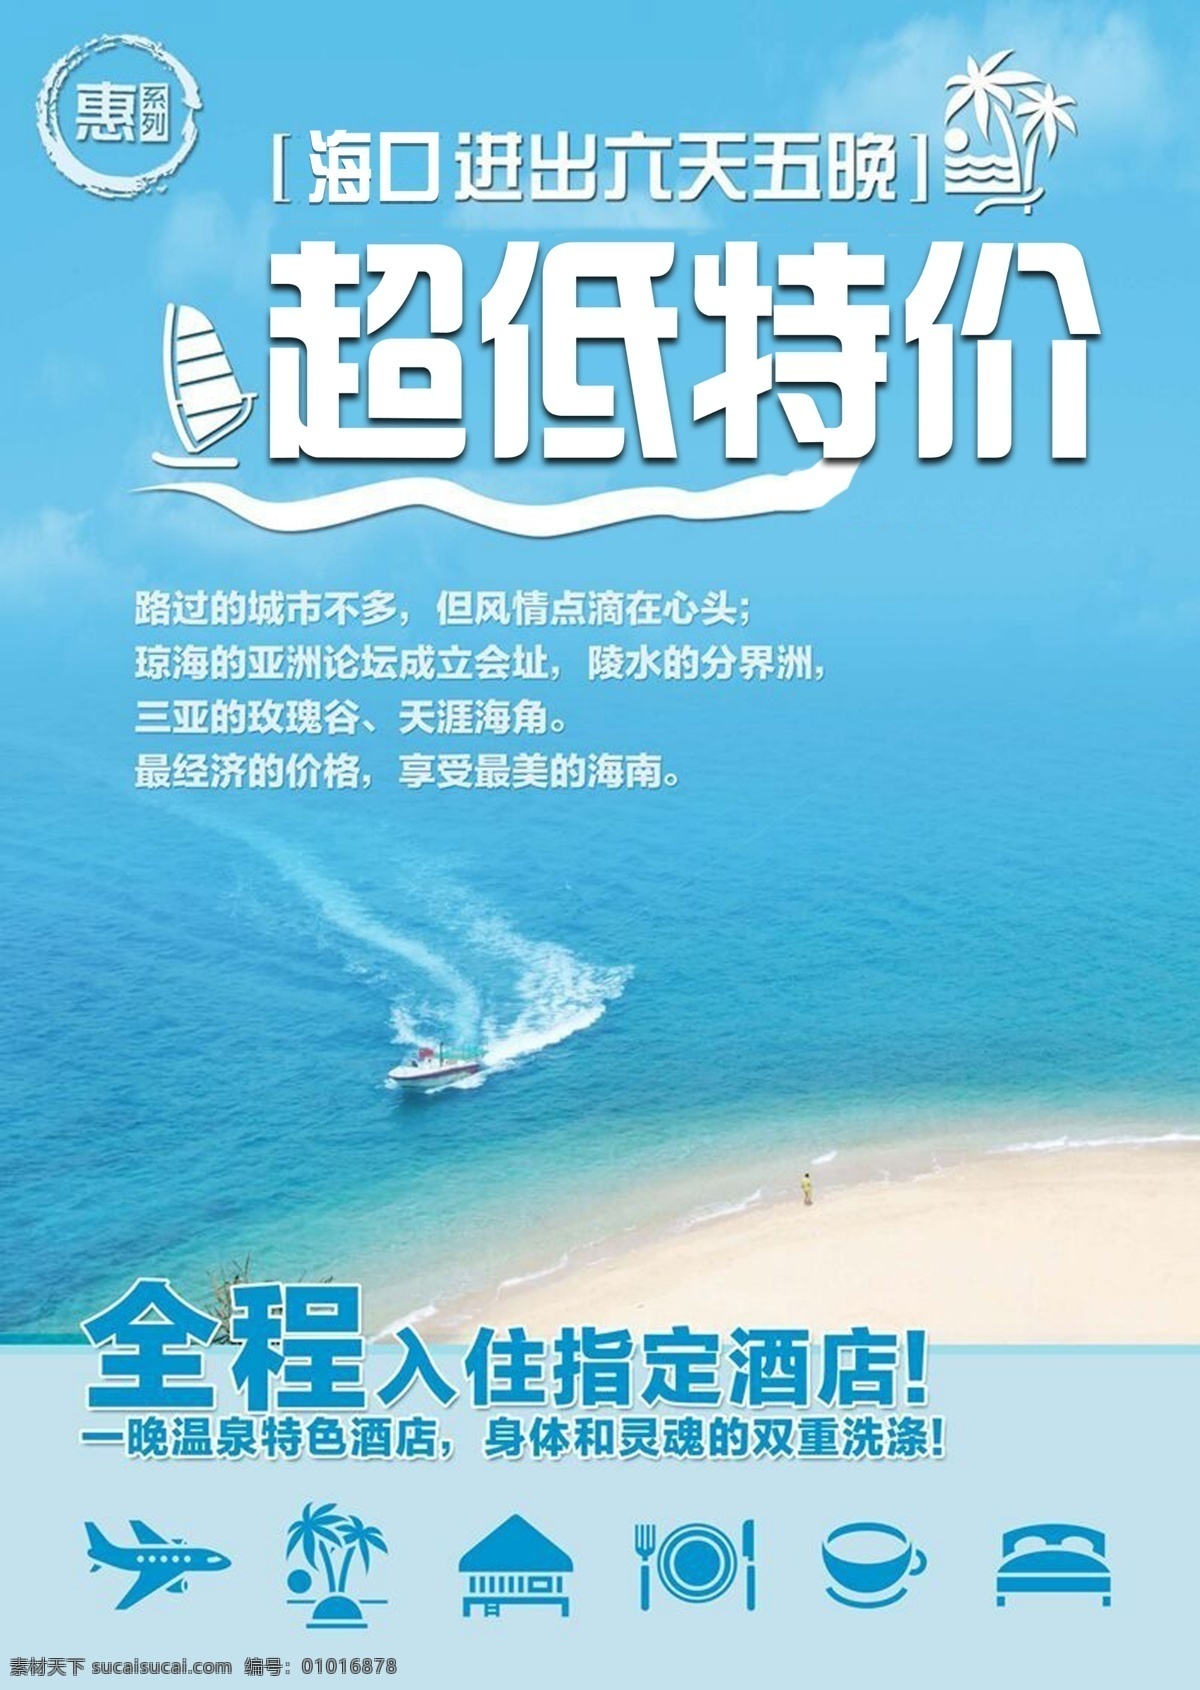 海口 三亚旅游 海报 三亚 旅游 广告 青色 天蓝色